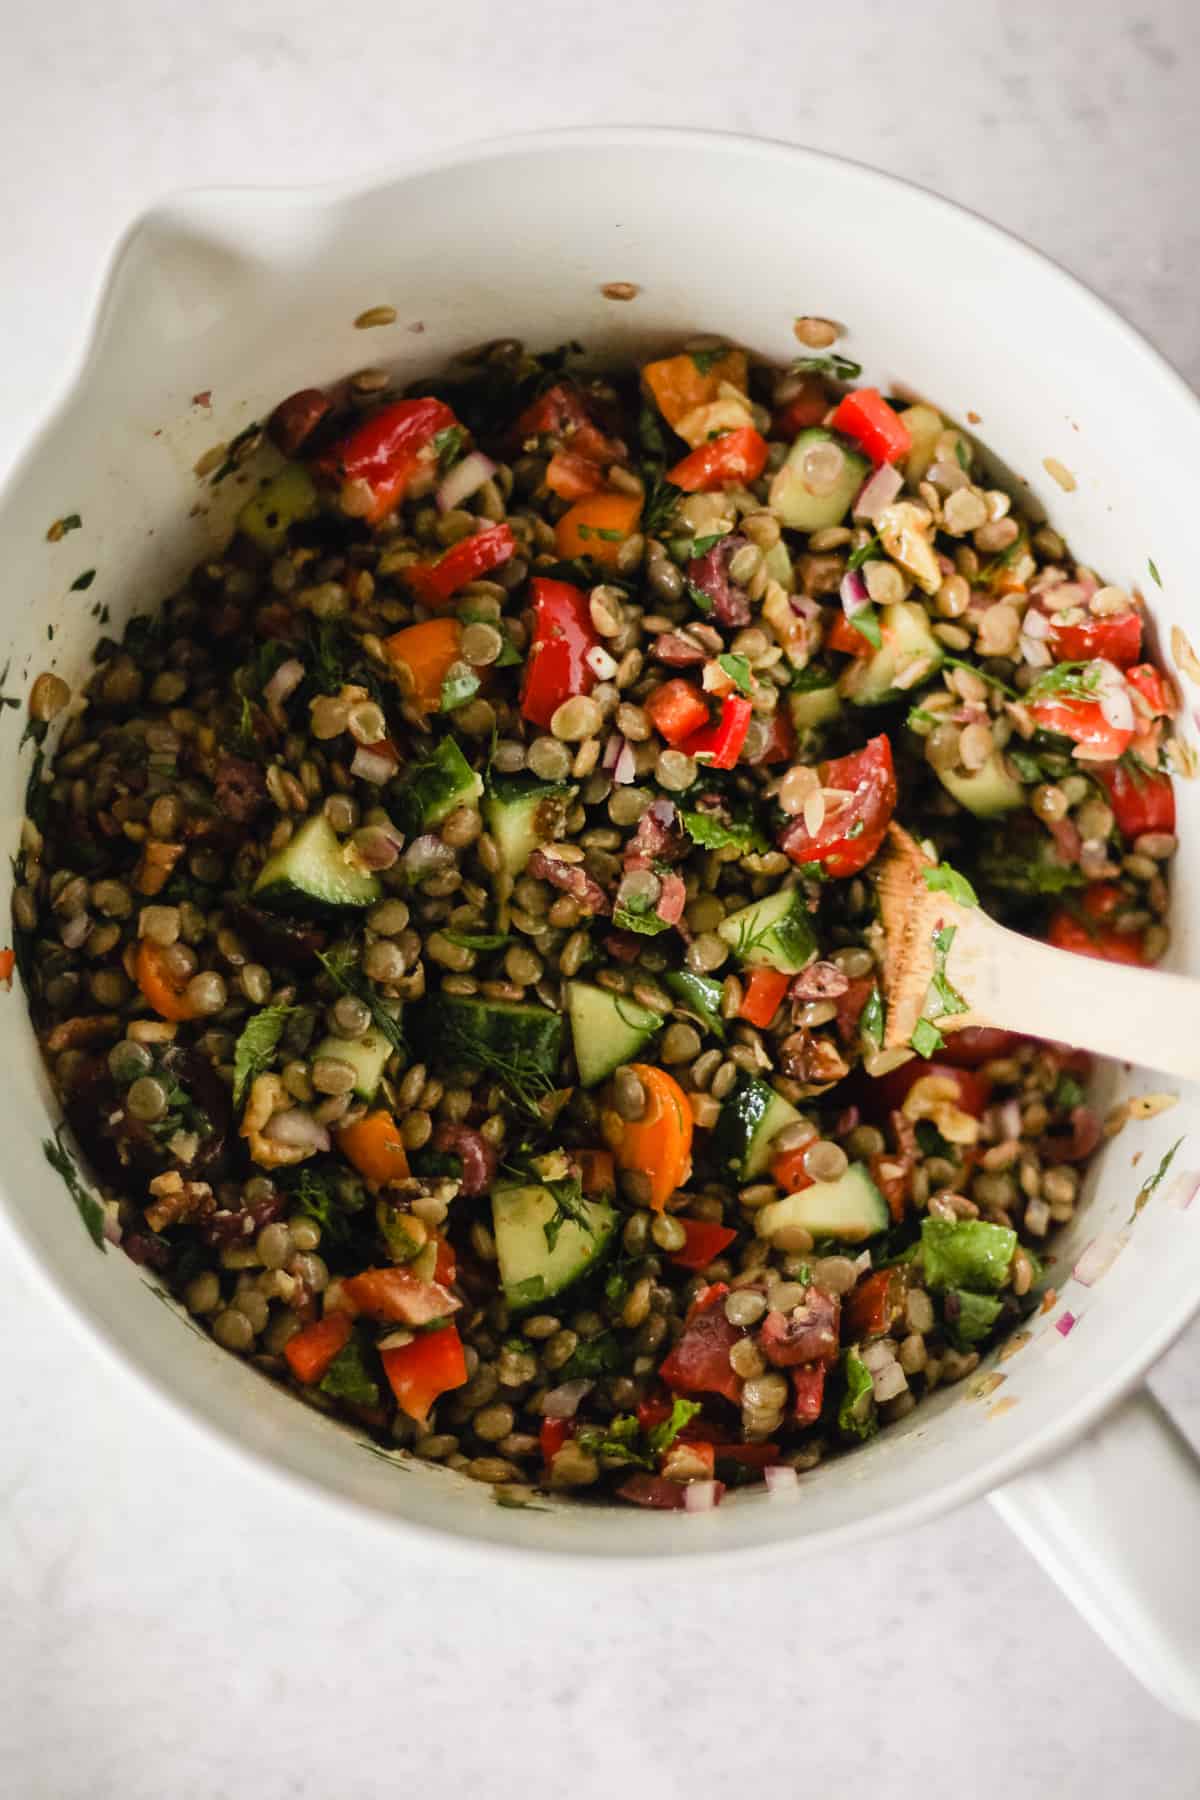 Tossing lentil salad with Greek dressing.